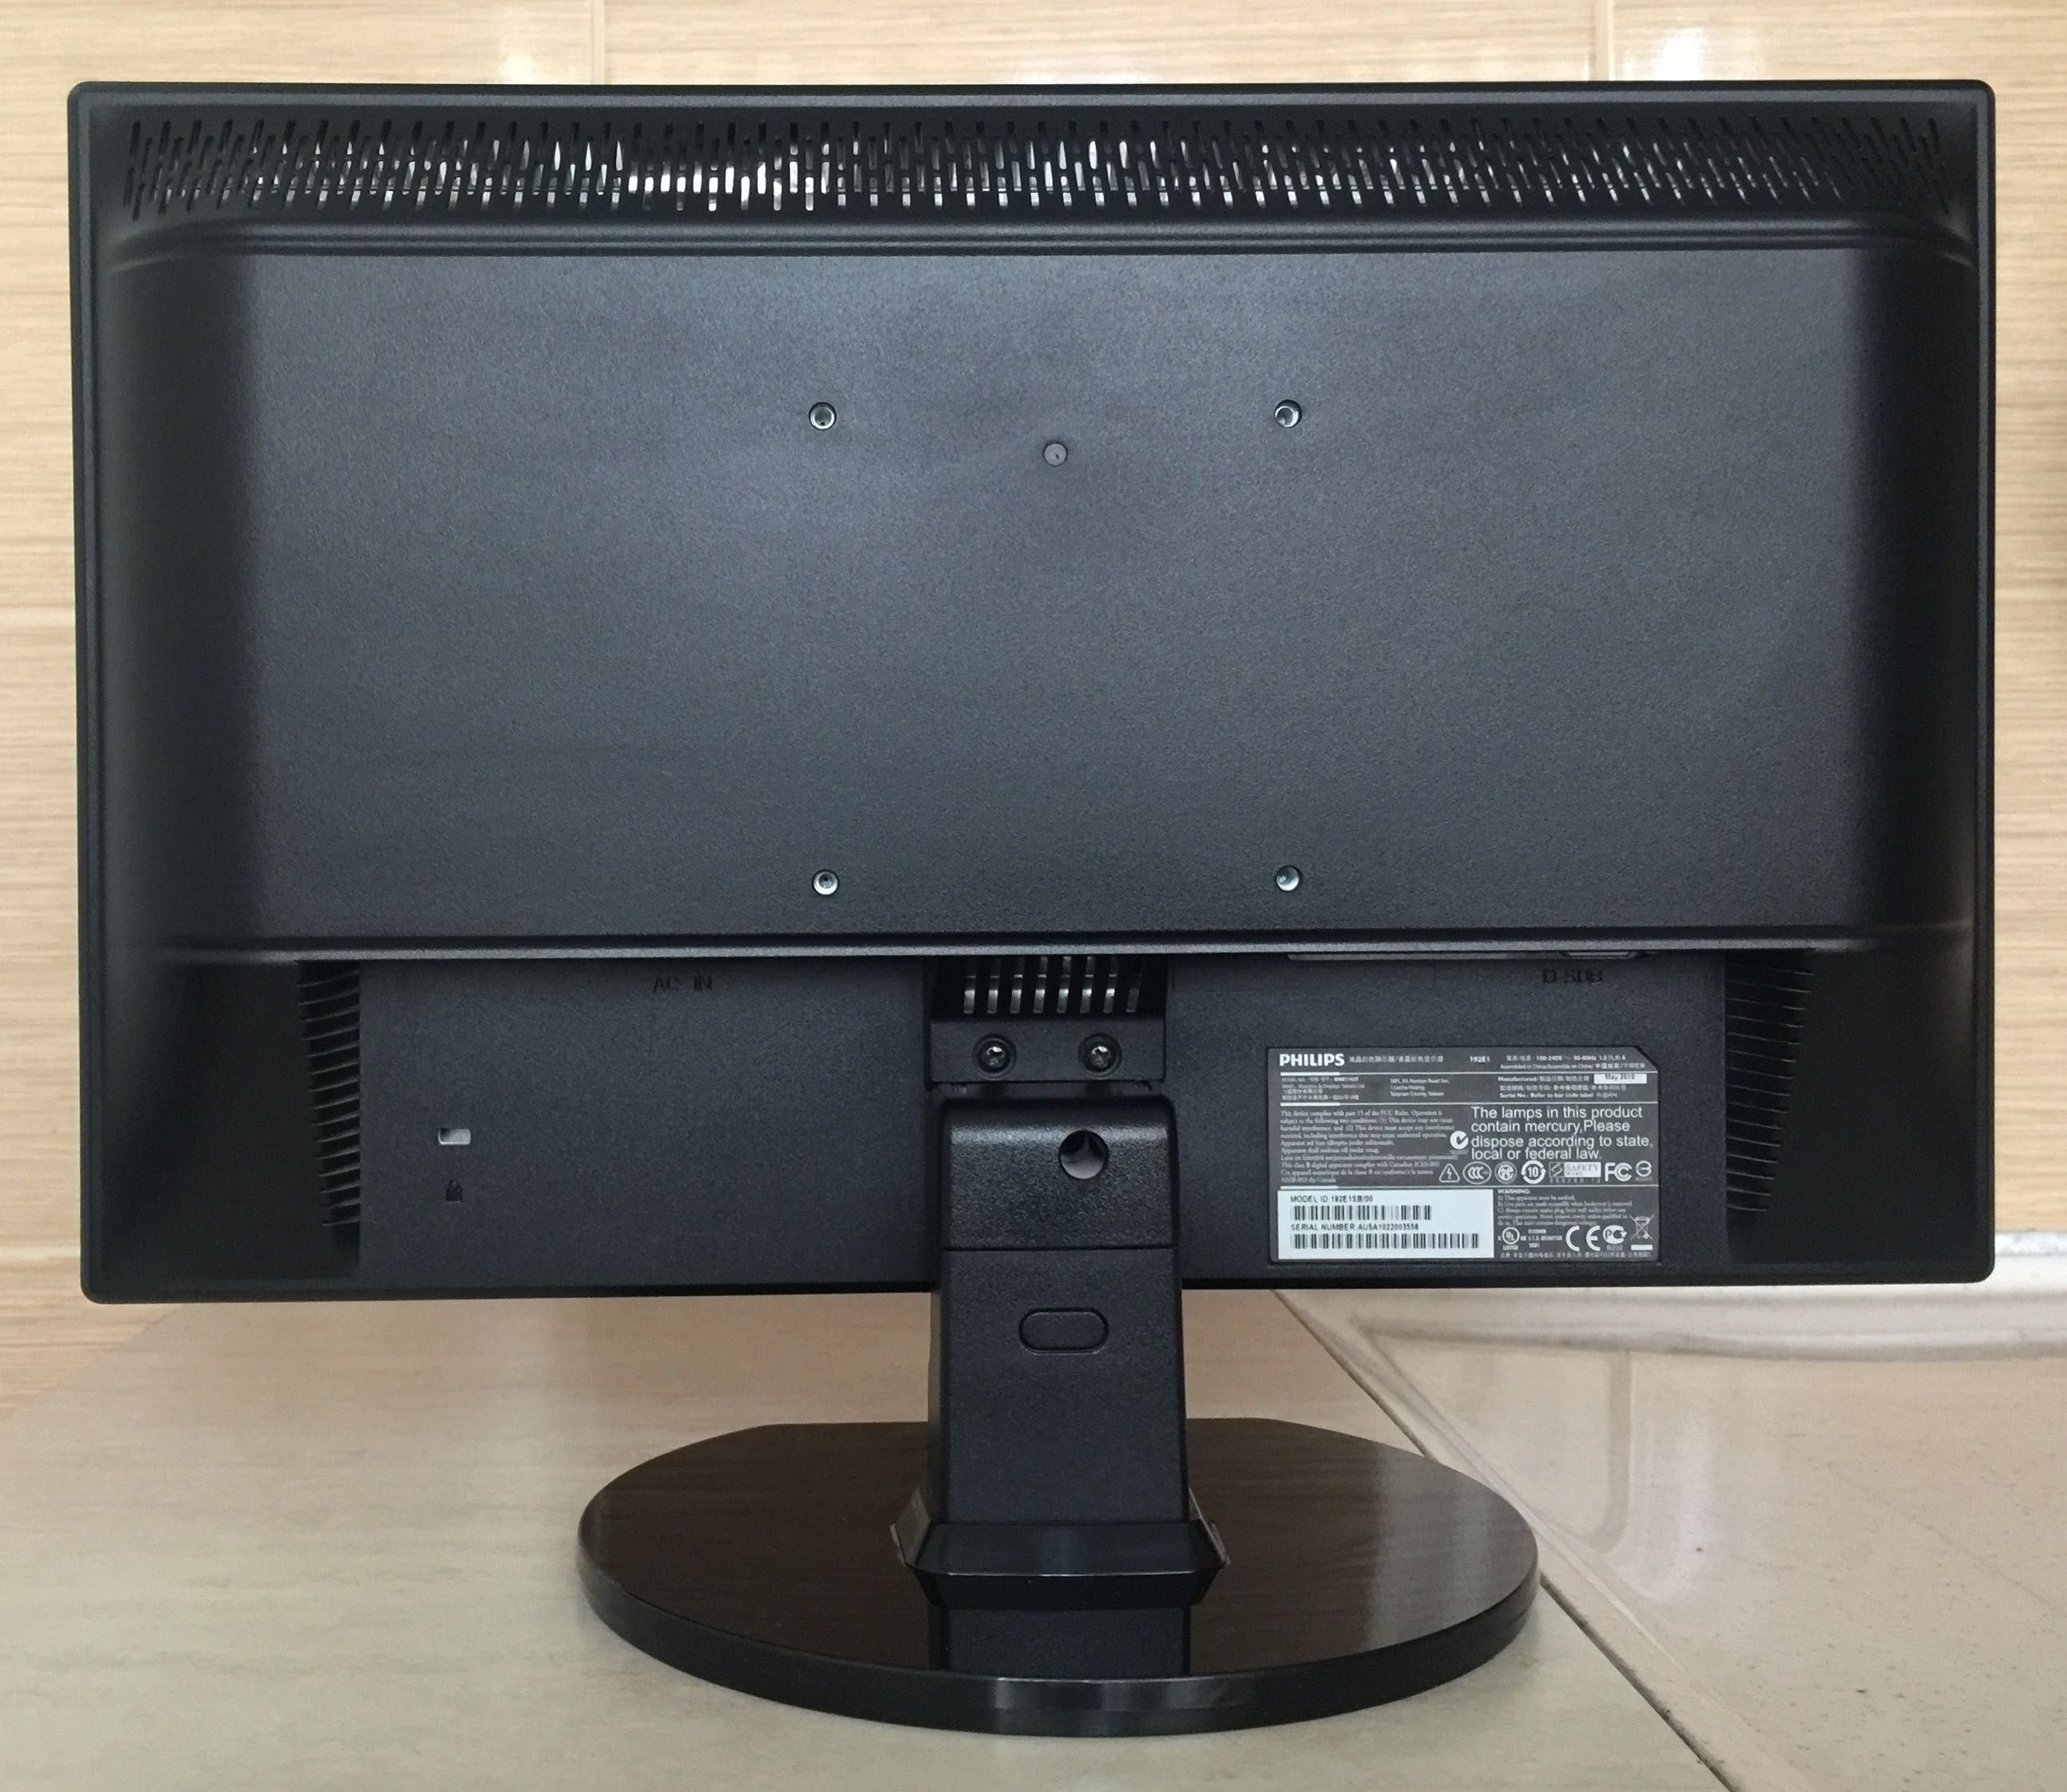 PHİLİPS монитор и клавиатура за настолен компютър